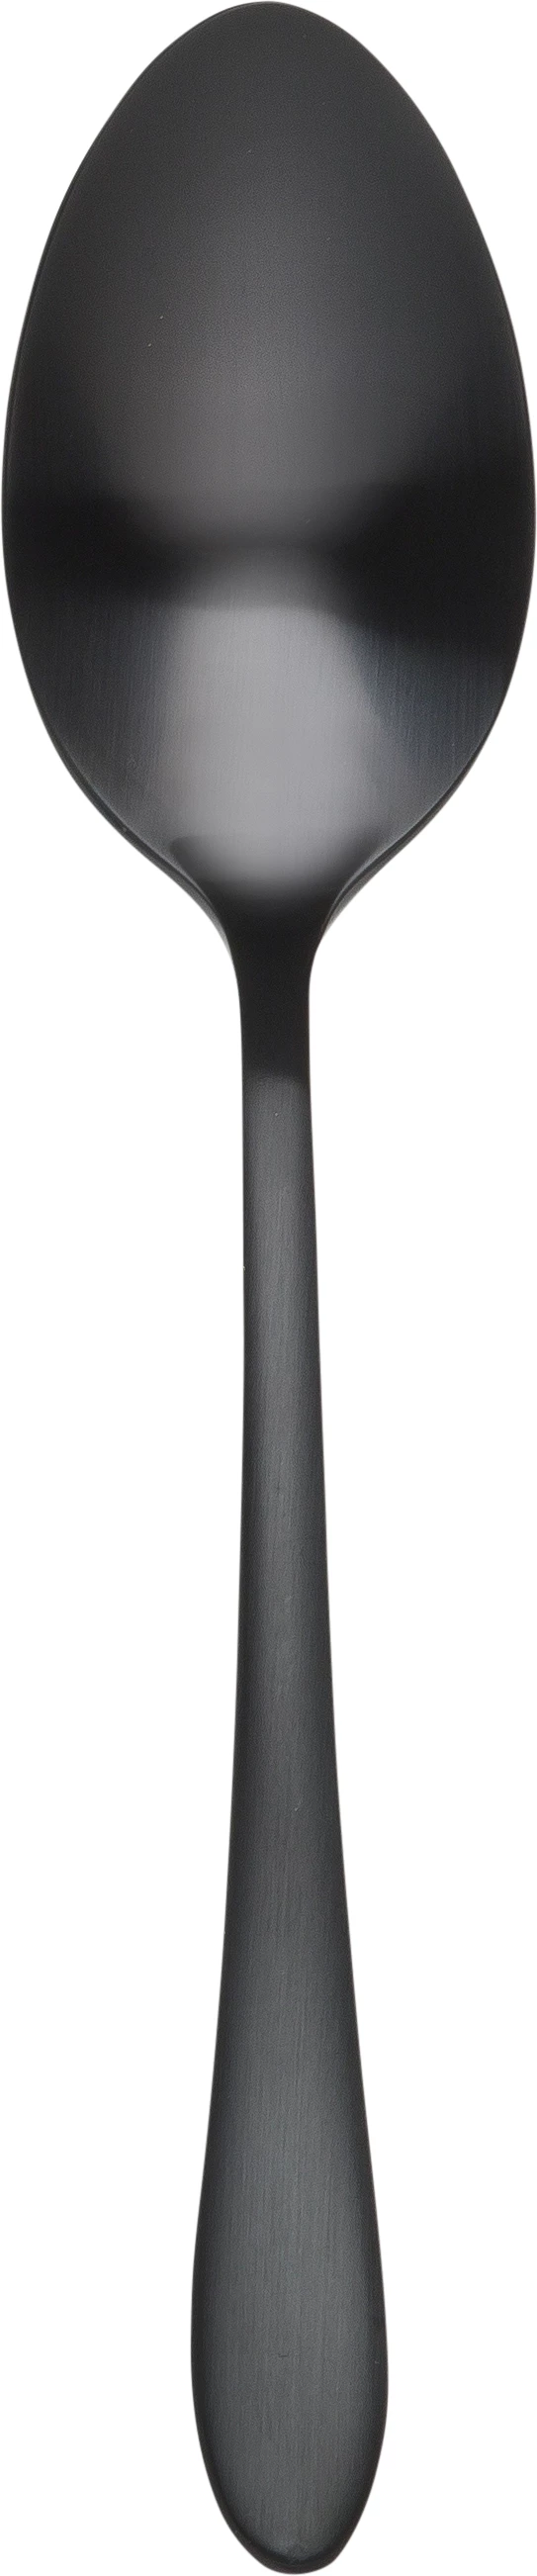 Øland teske, sort, 14 cm